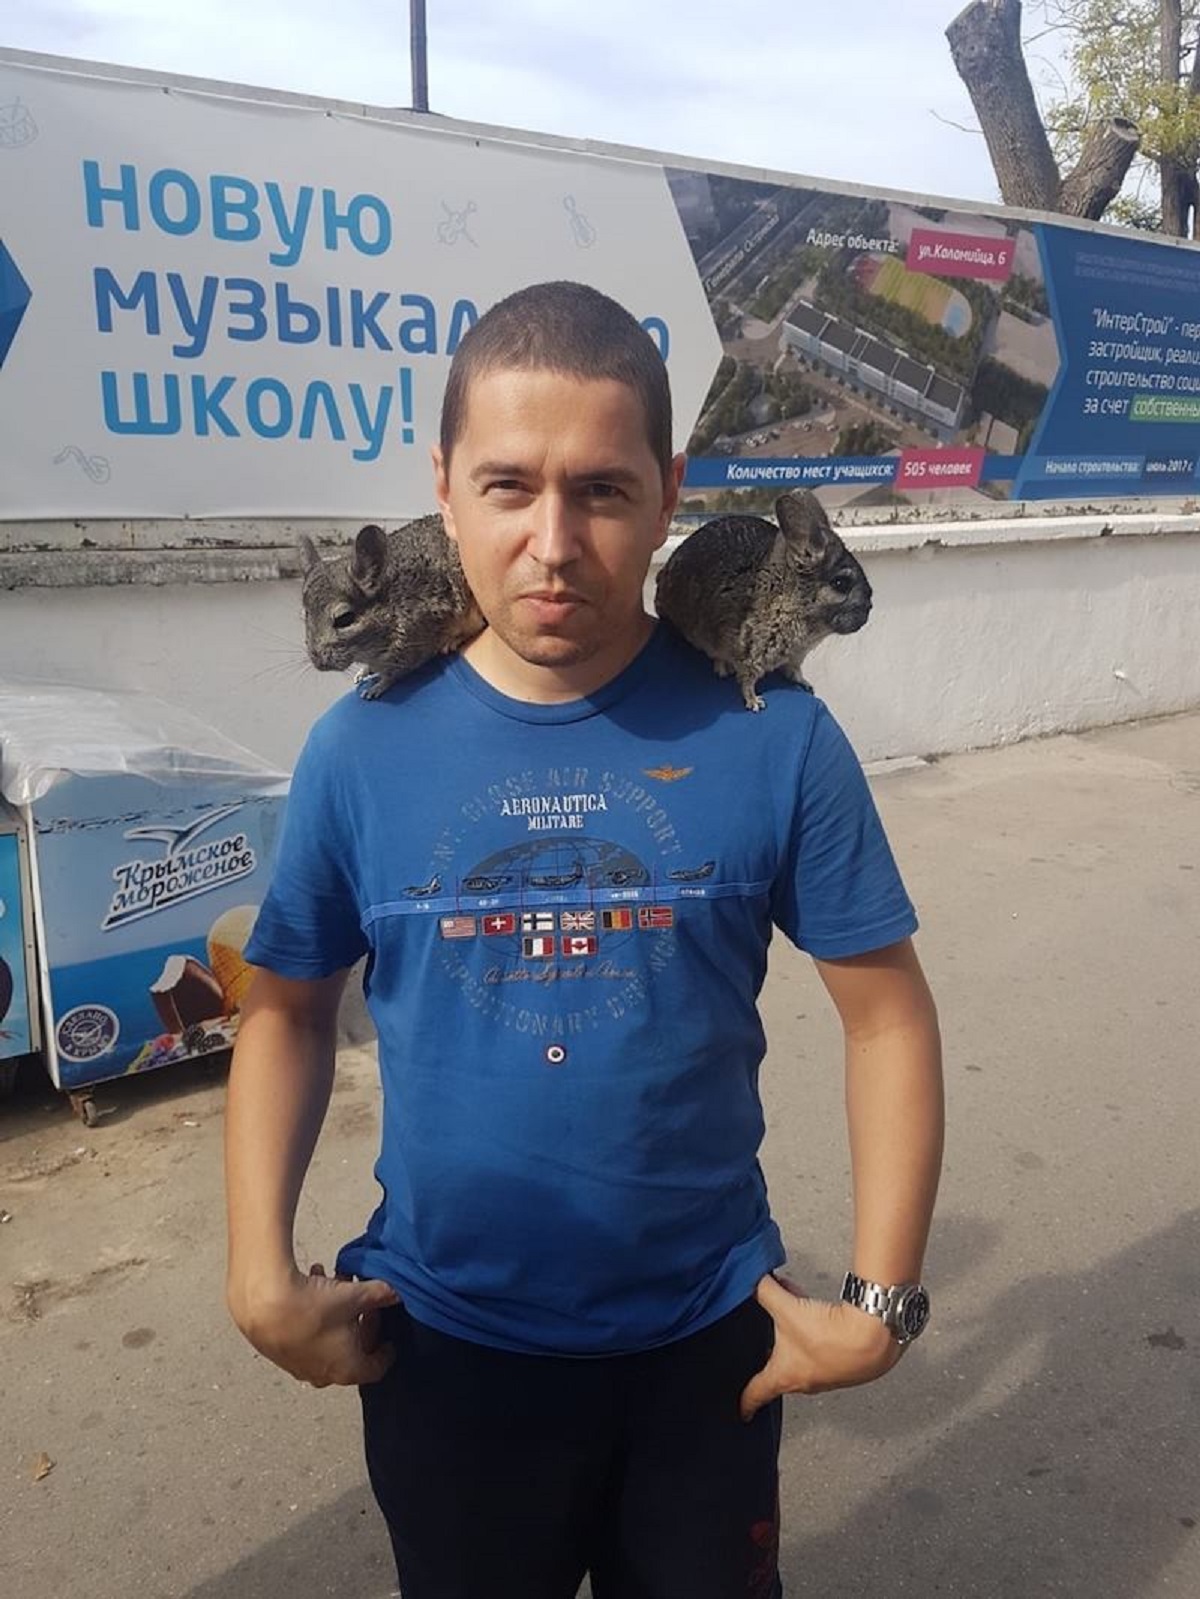 Andrej Babiš mladší pobýval v roce 2017 na Krymu